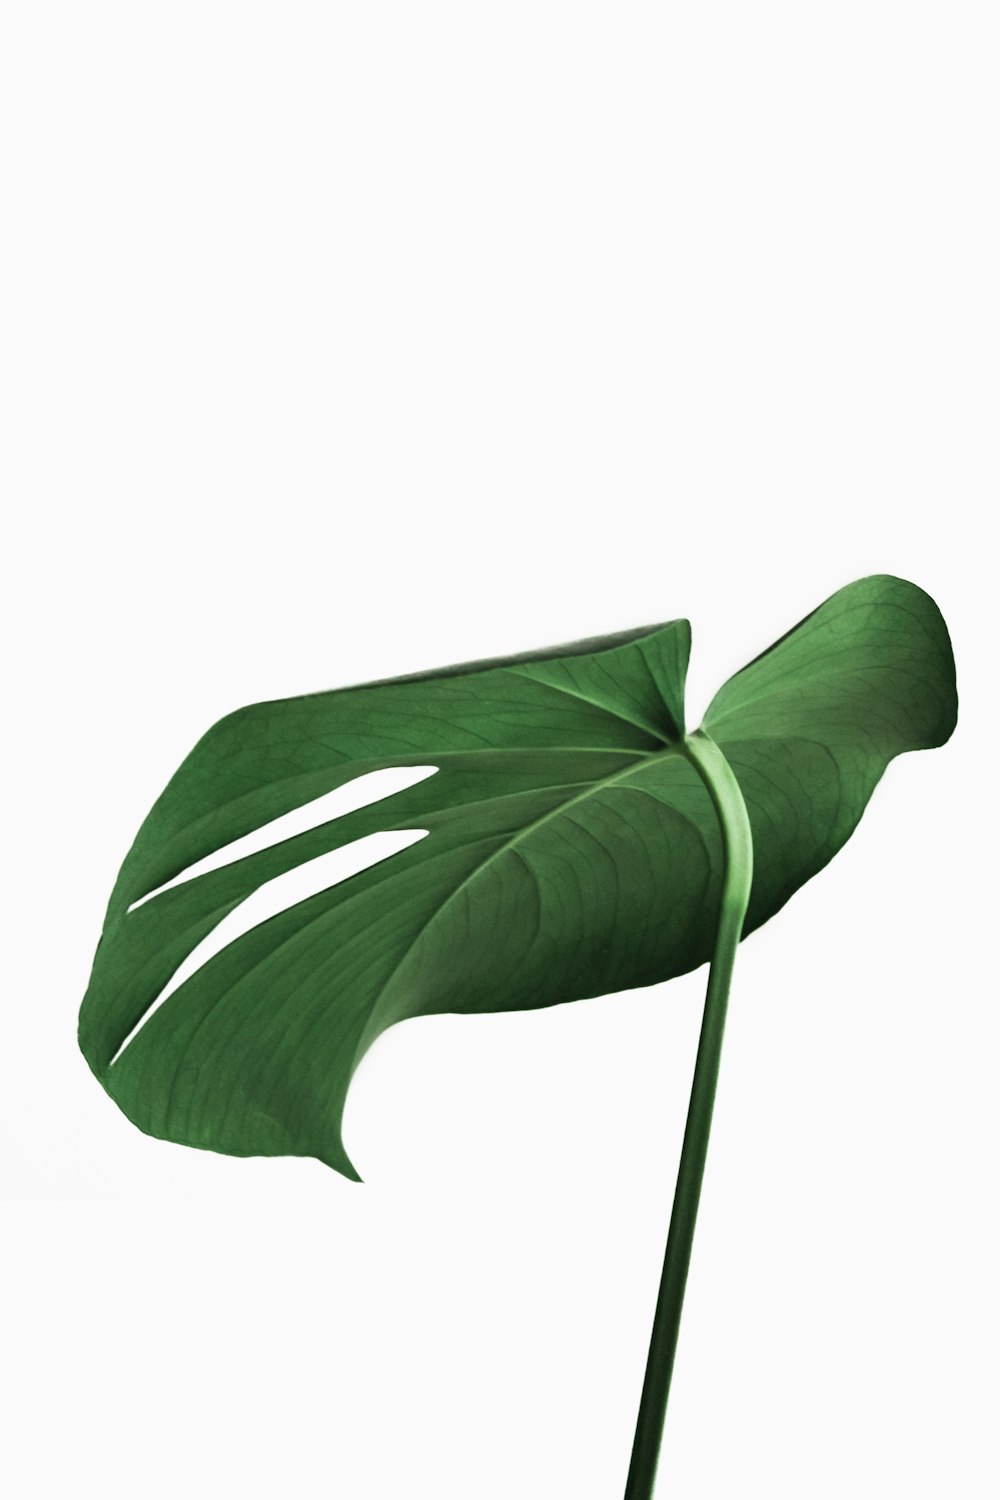 planta de hoja verde sobre fondo blanco